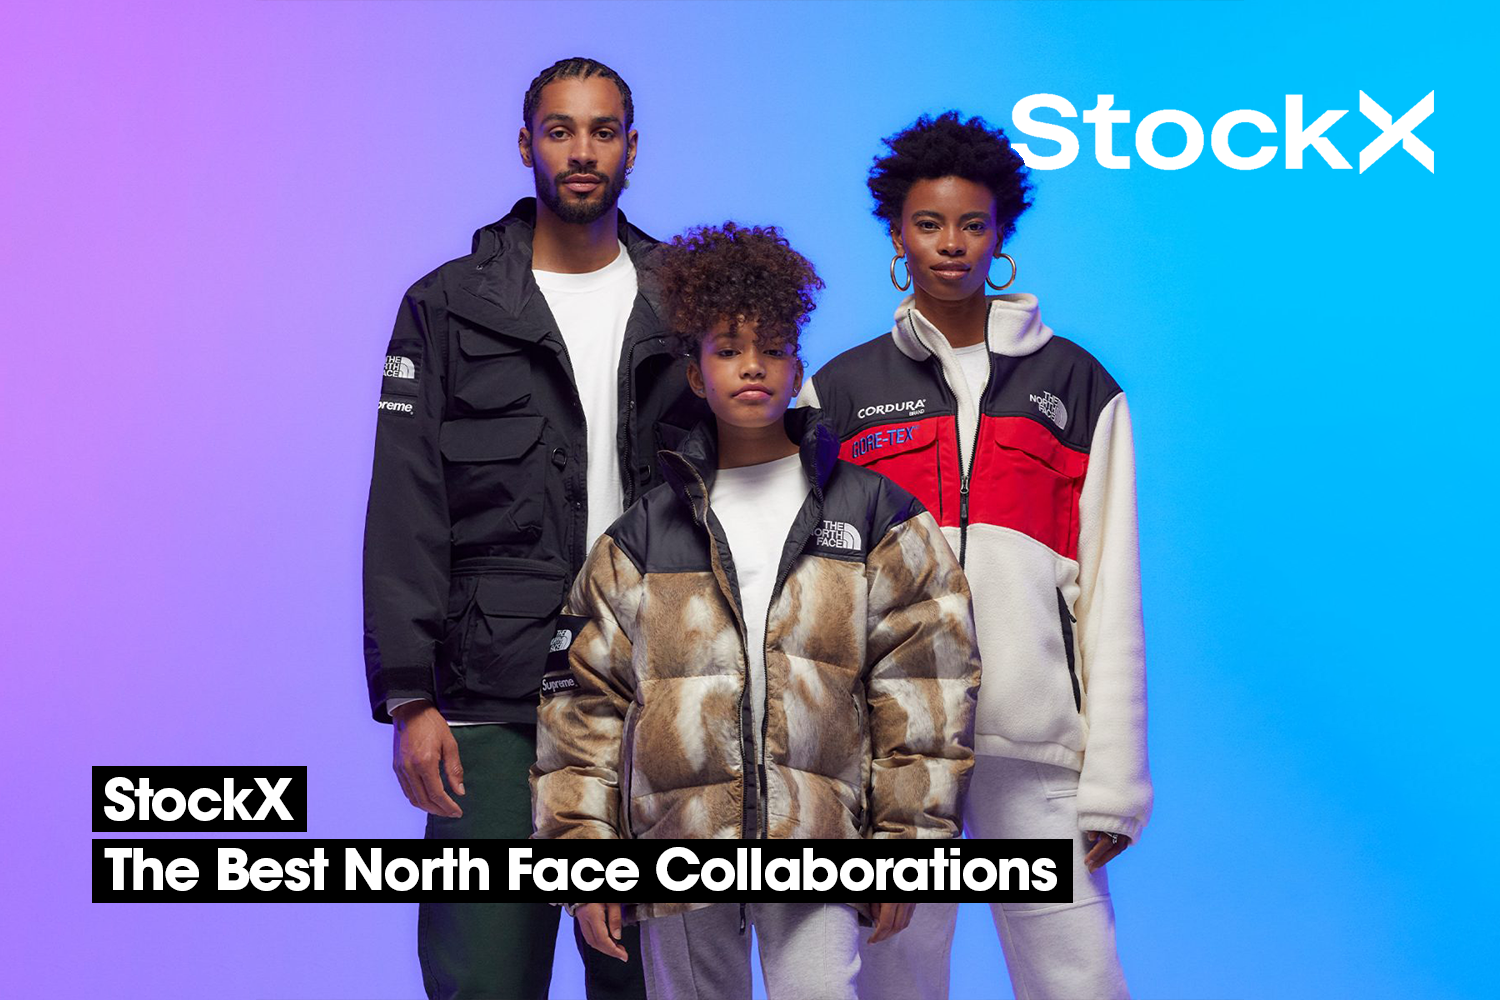 De beste The North Face samenwerkingen op StockX